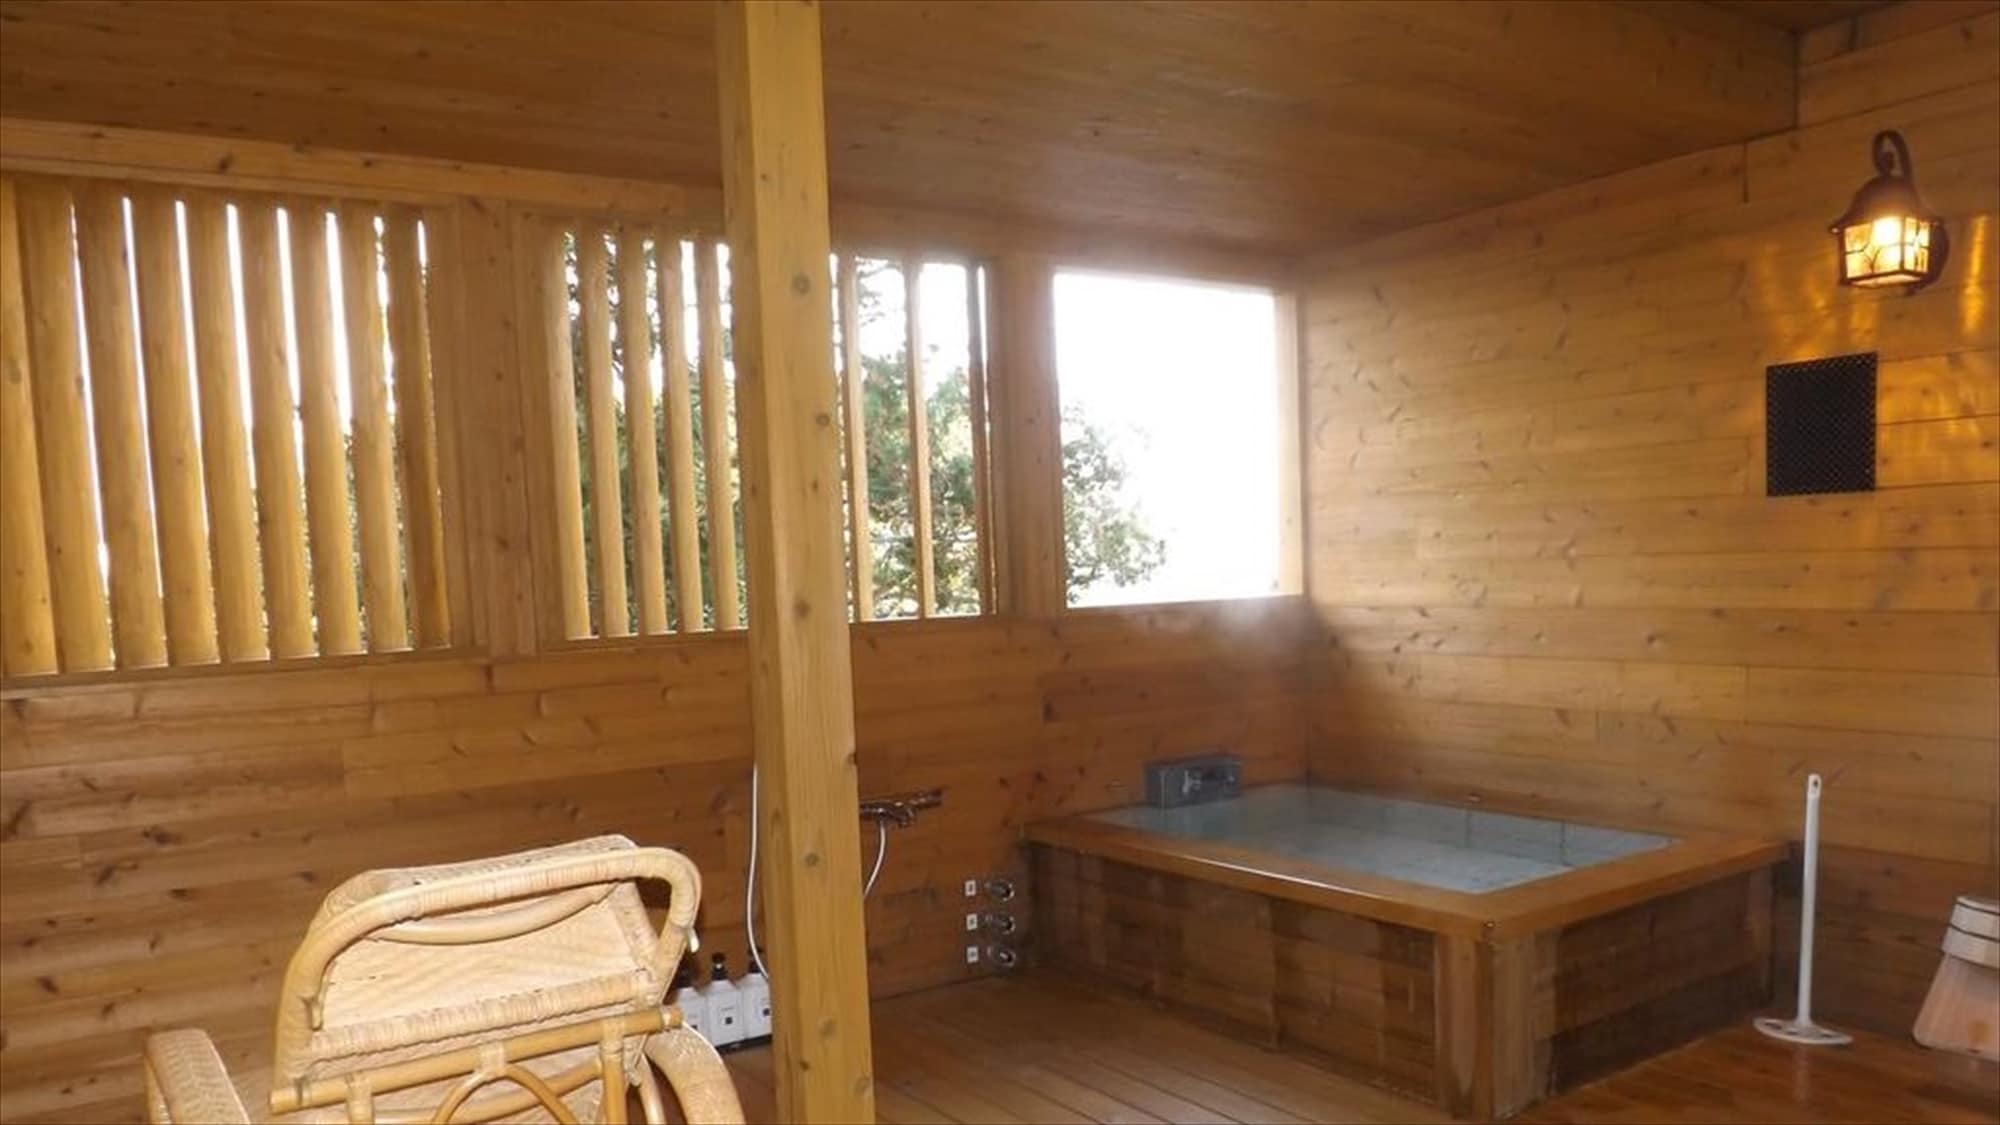 Japanese-style bath with open-air bath